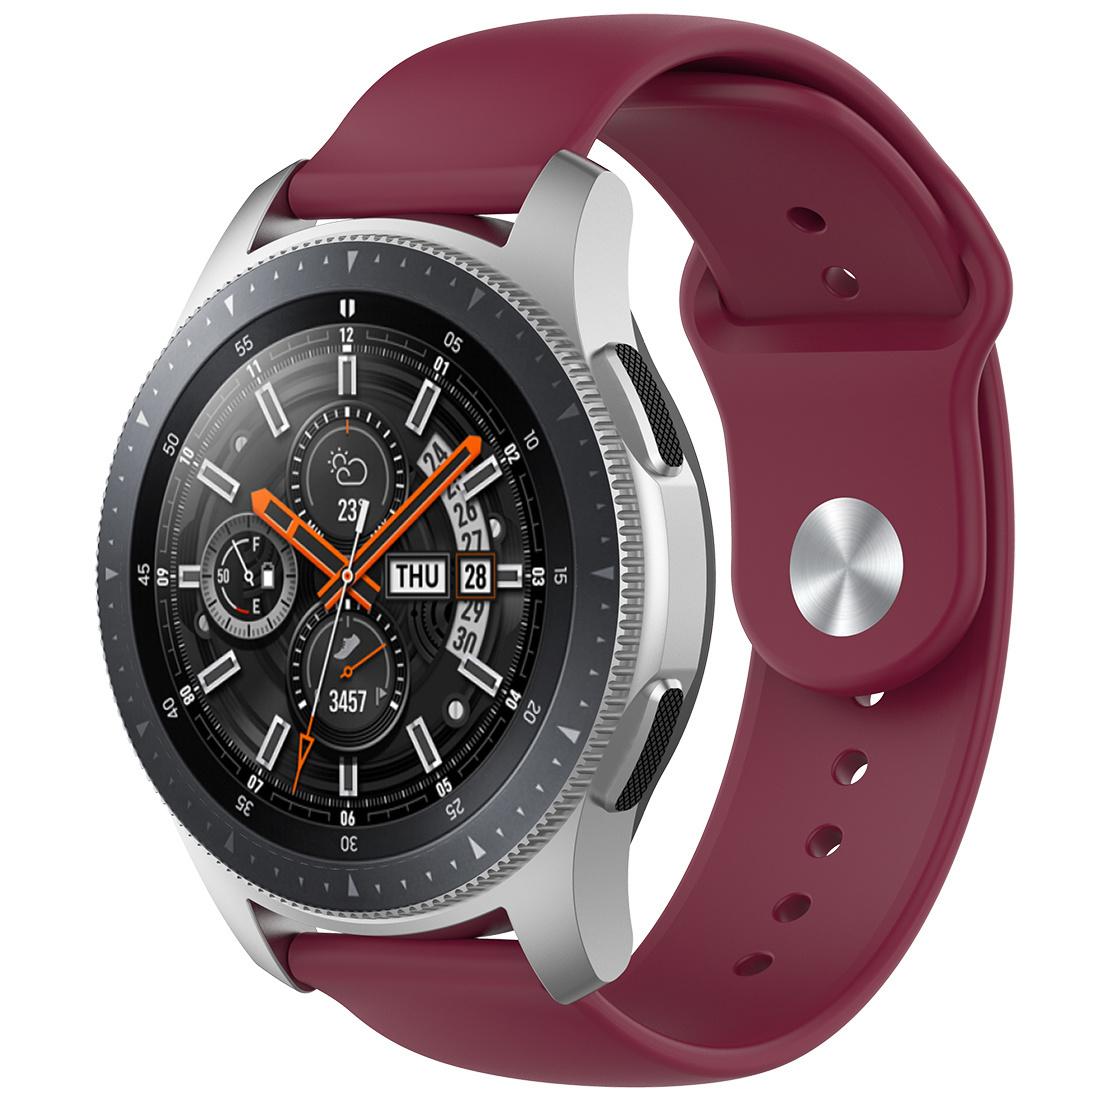 Cinturino sport in silicone per Samsung Galaxy Watch - rosso vino